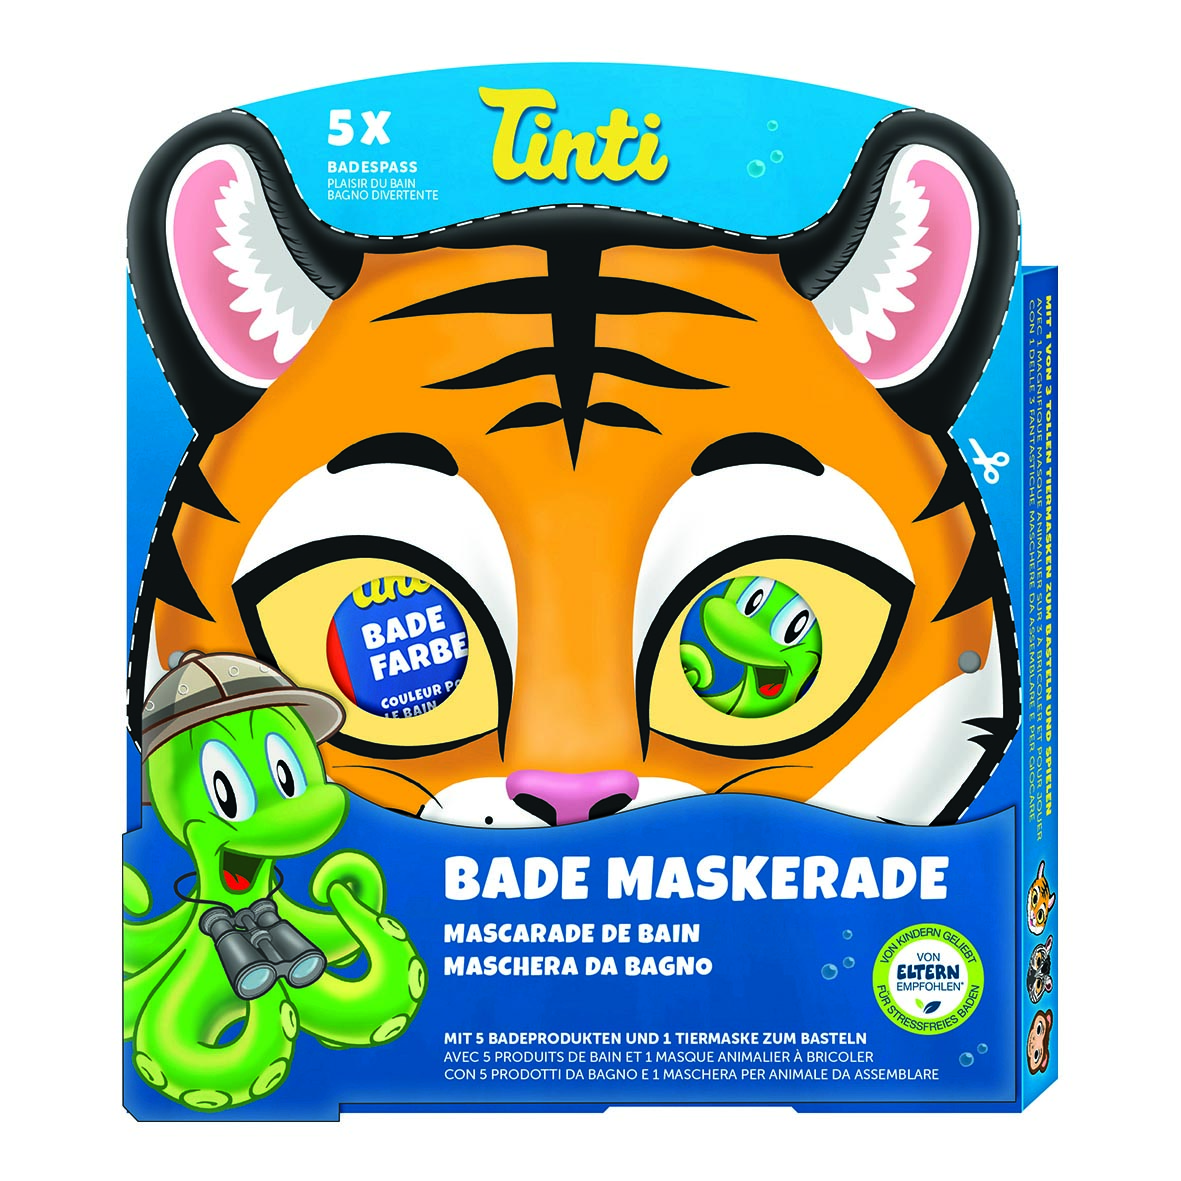 Mascarade de Bain (Masque de Tigre)